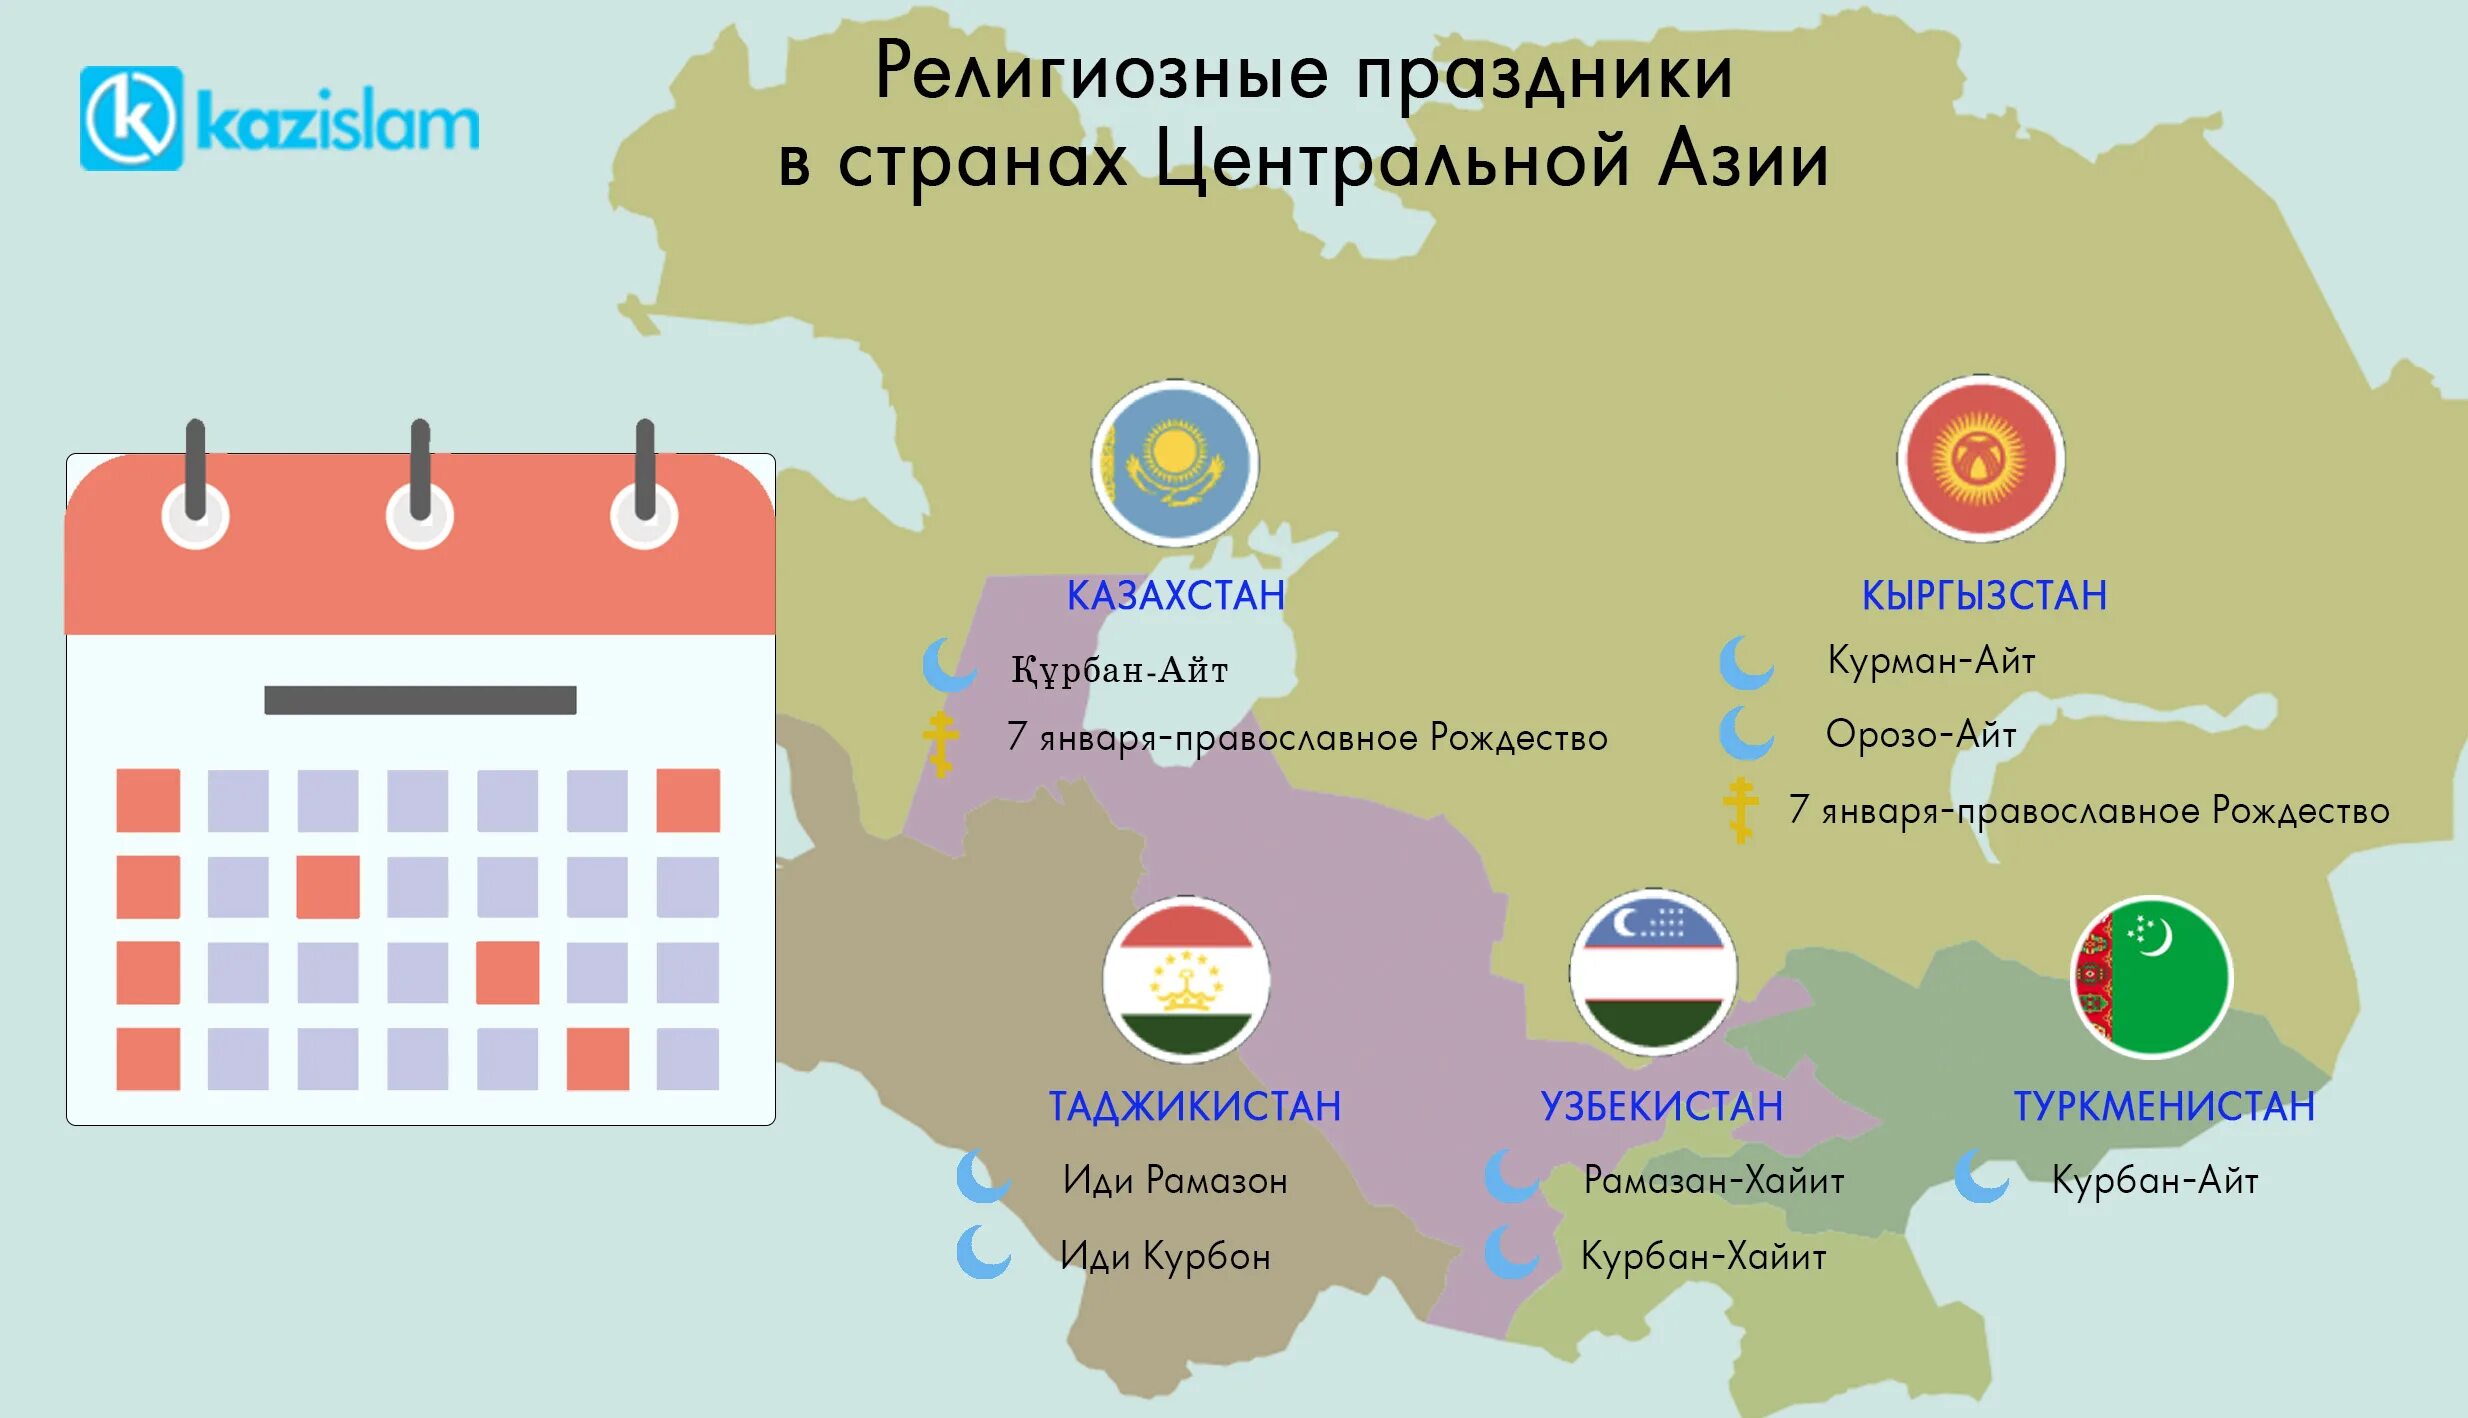 Страны центральной азии это. Центральная Азия это какие страны. Религиозные праздники Казахстана. 5 Стран центральной Азии. Страны Центрально-азиатского региона список.